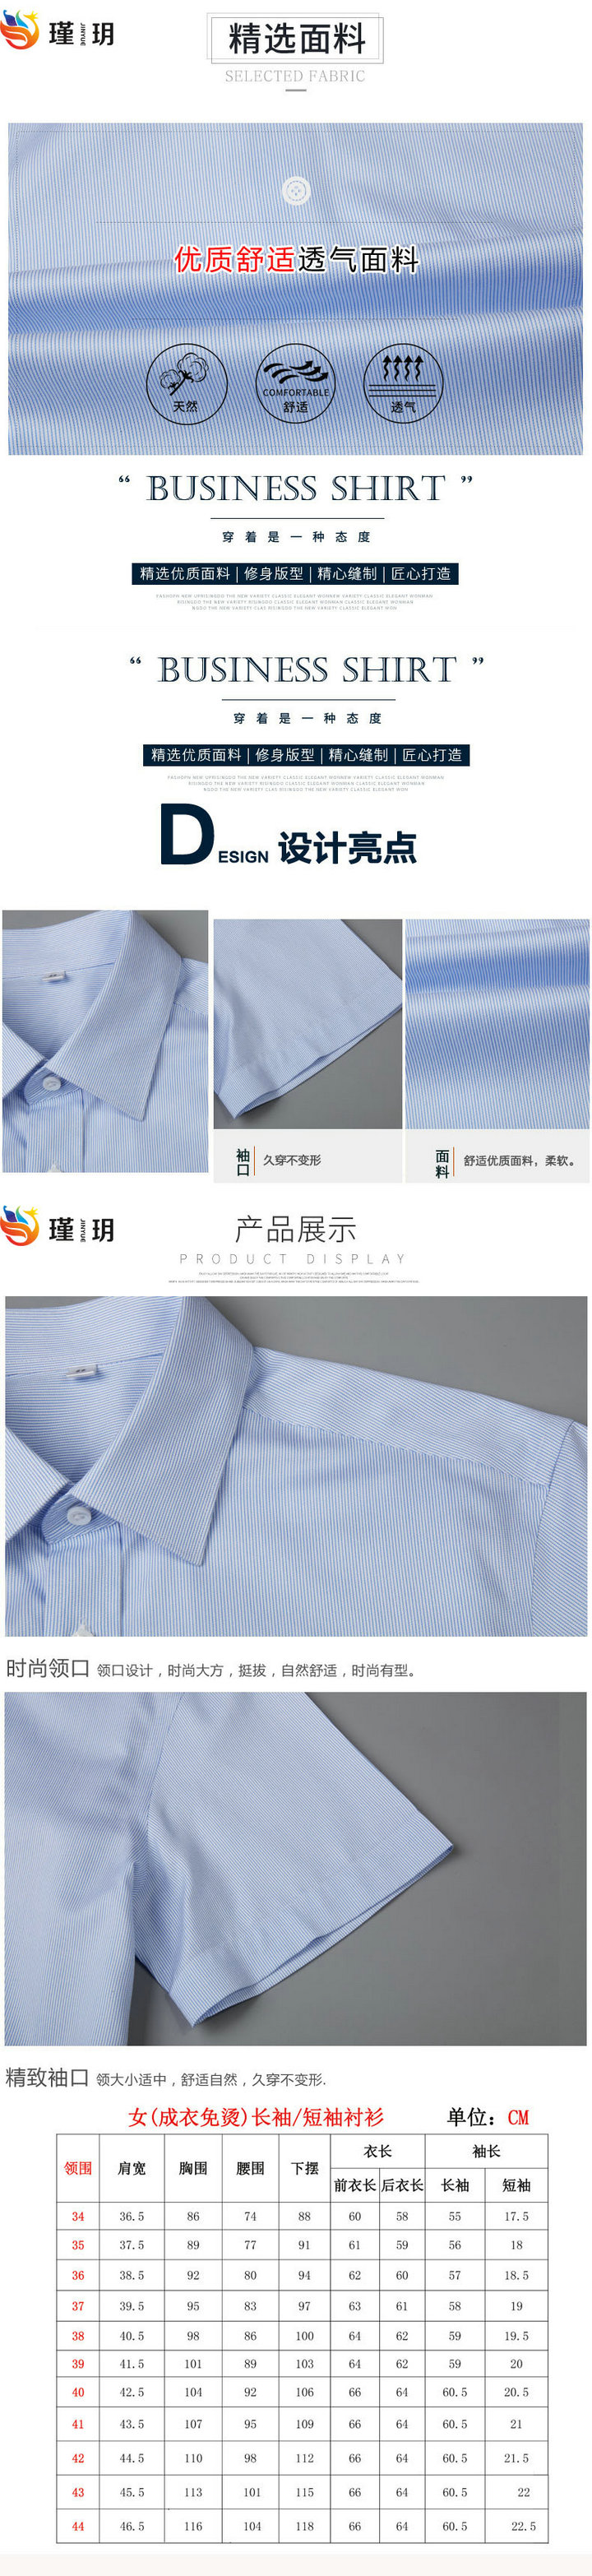 武汉衬衫定做,正装衬衫定制,武汉正装衬衫厂家(图2)